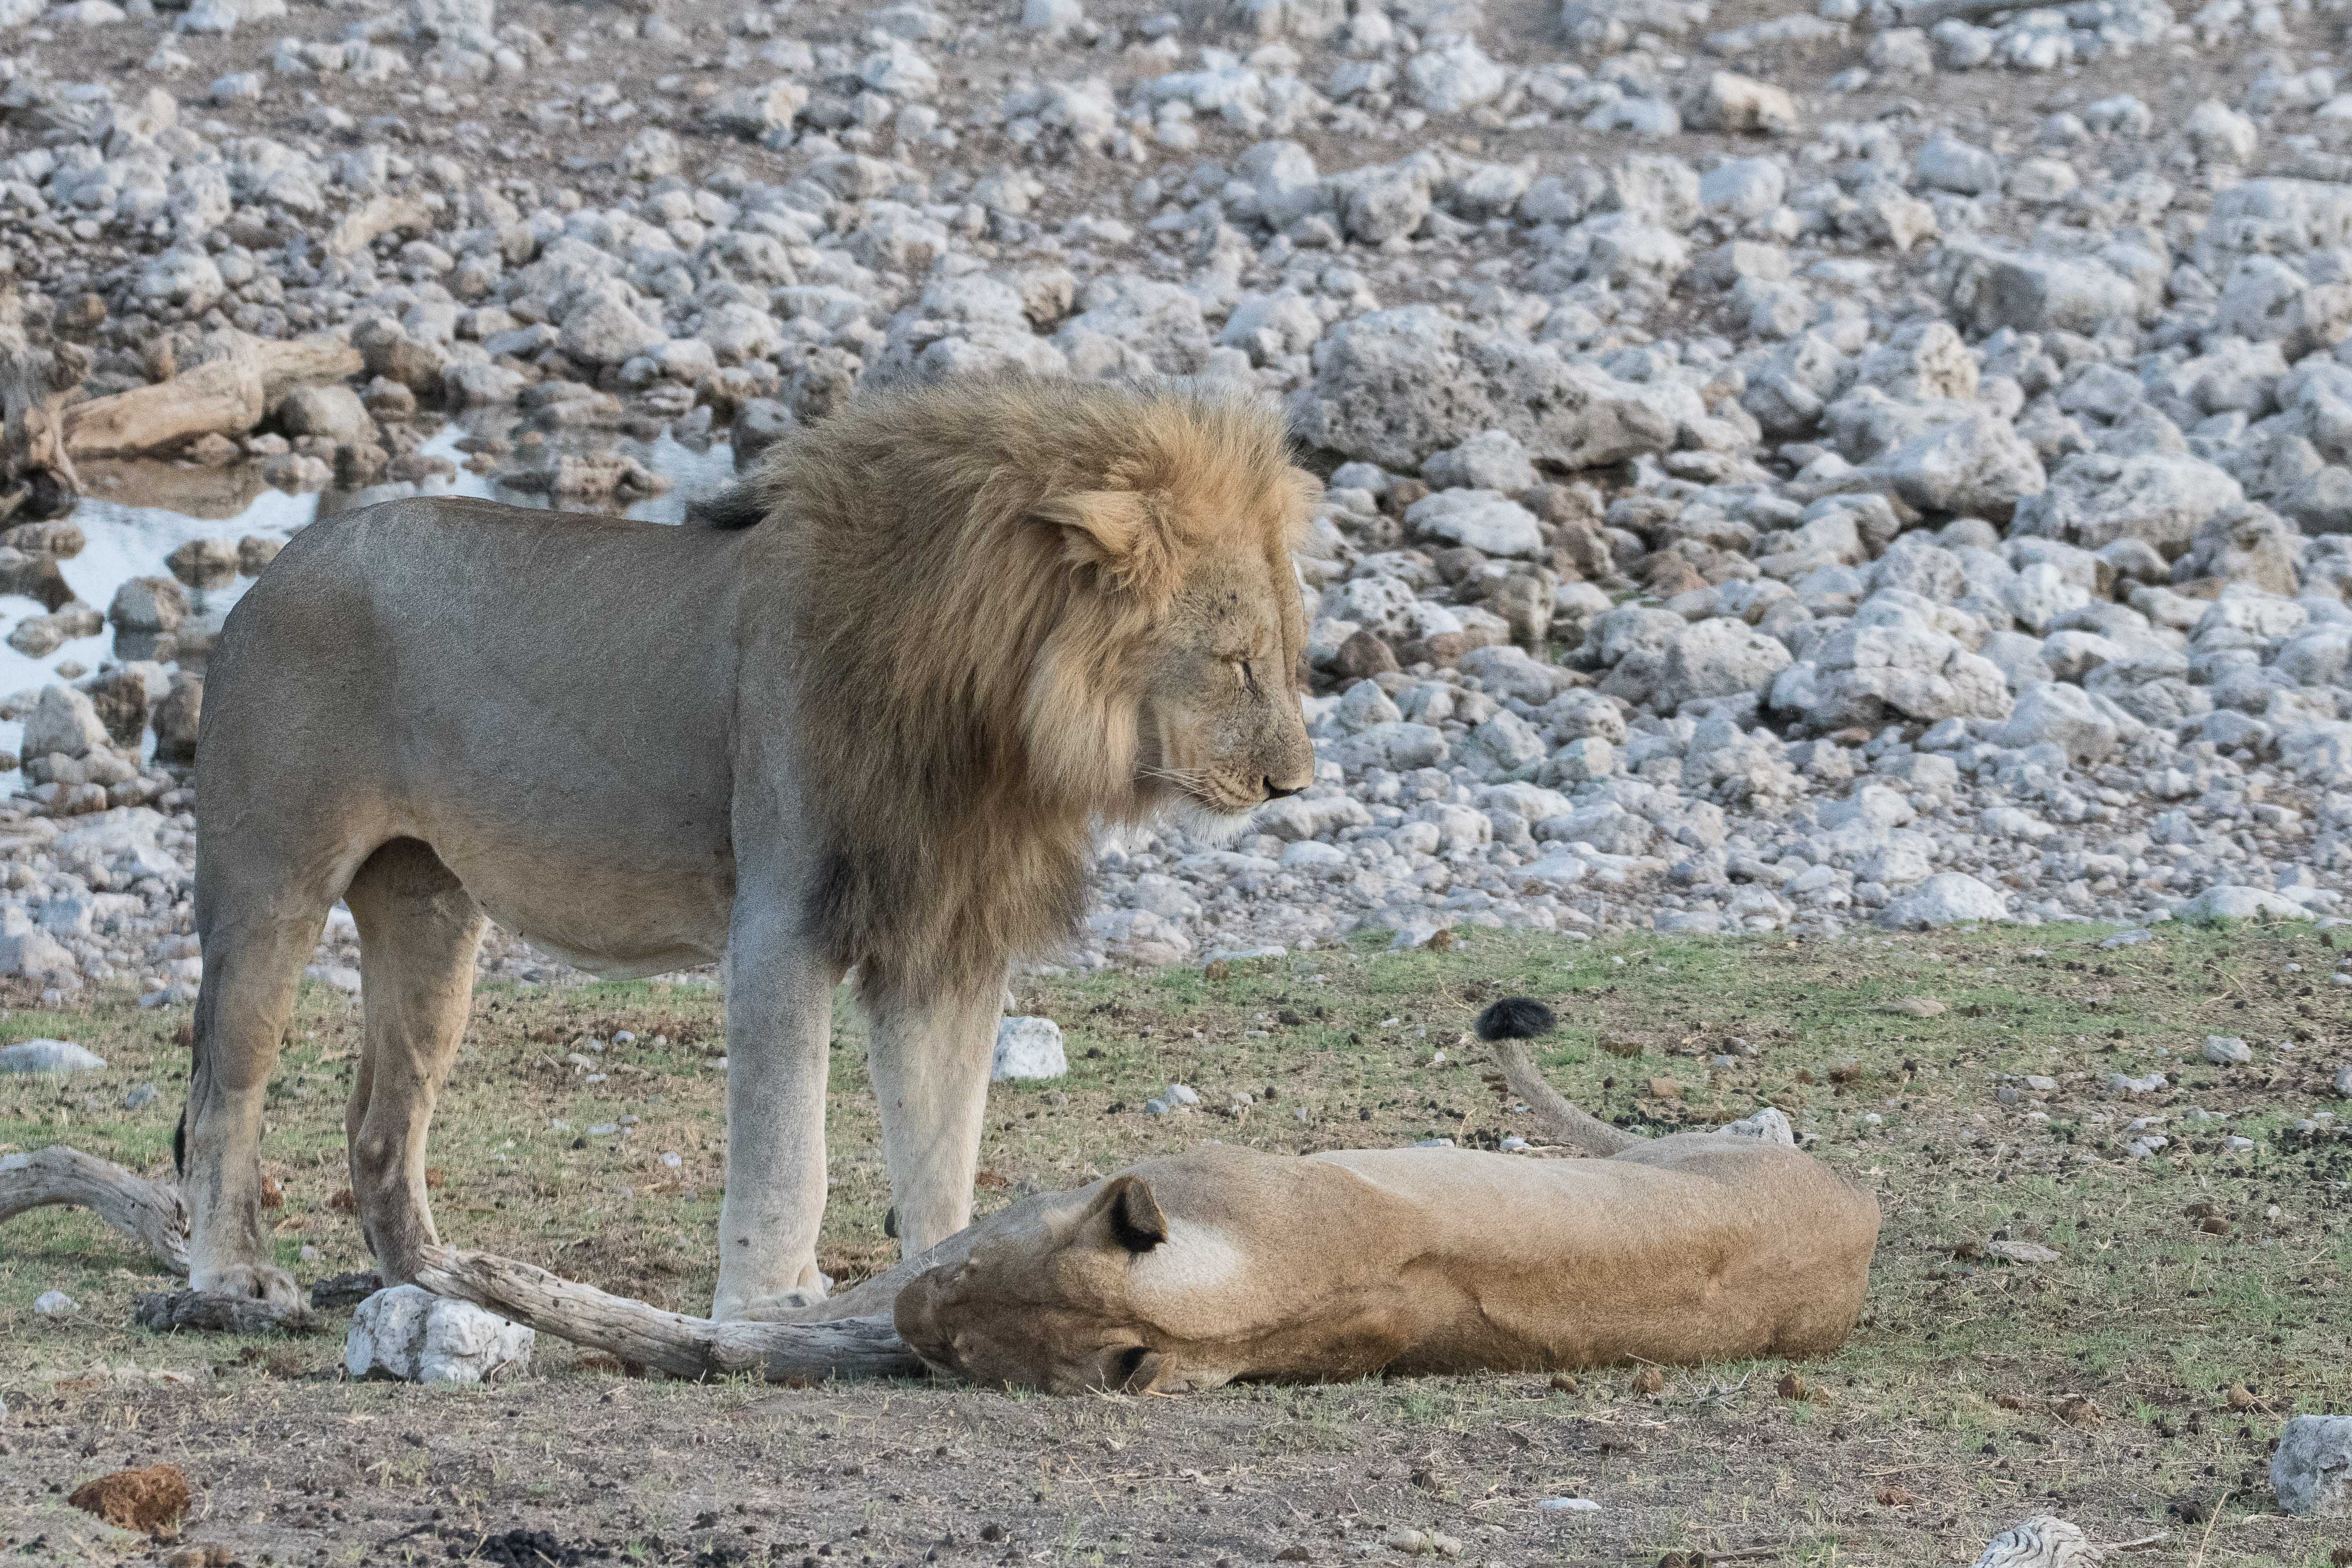 Le lion reste impassible face aux avances de la lionne qui se roule pourtant à ses pieds et fait frétiller le bout de sa queue, probablement pour l'exciter! Namutoni, Etosha, Namibie.